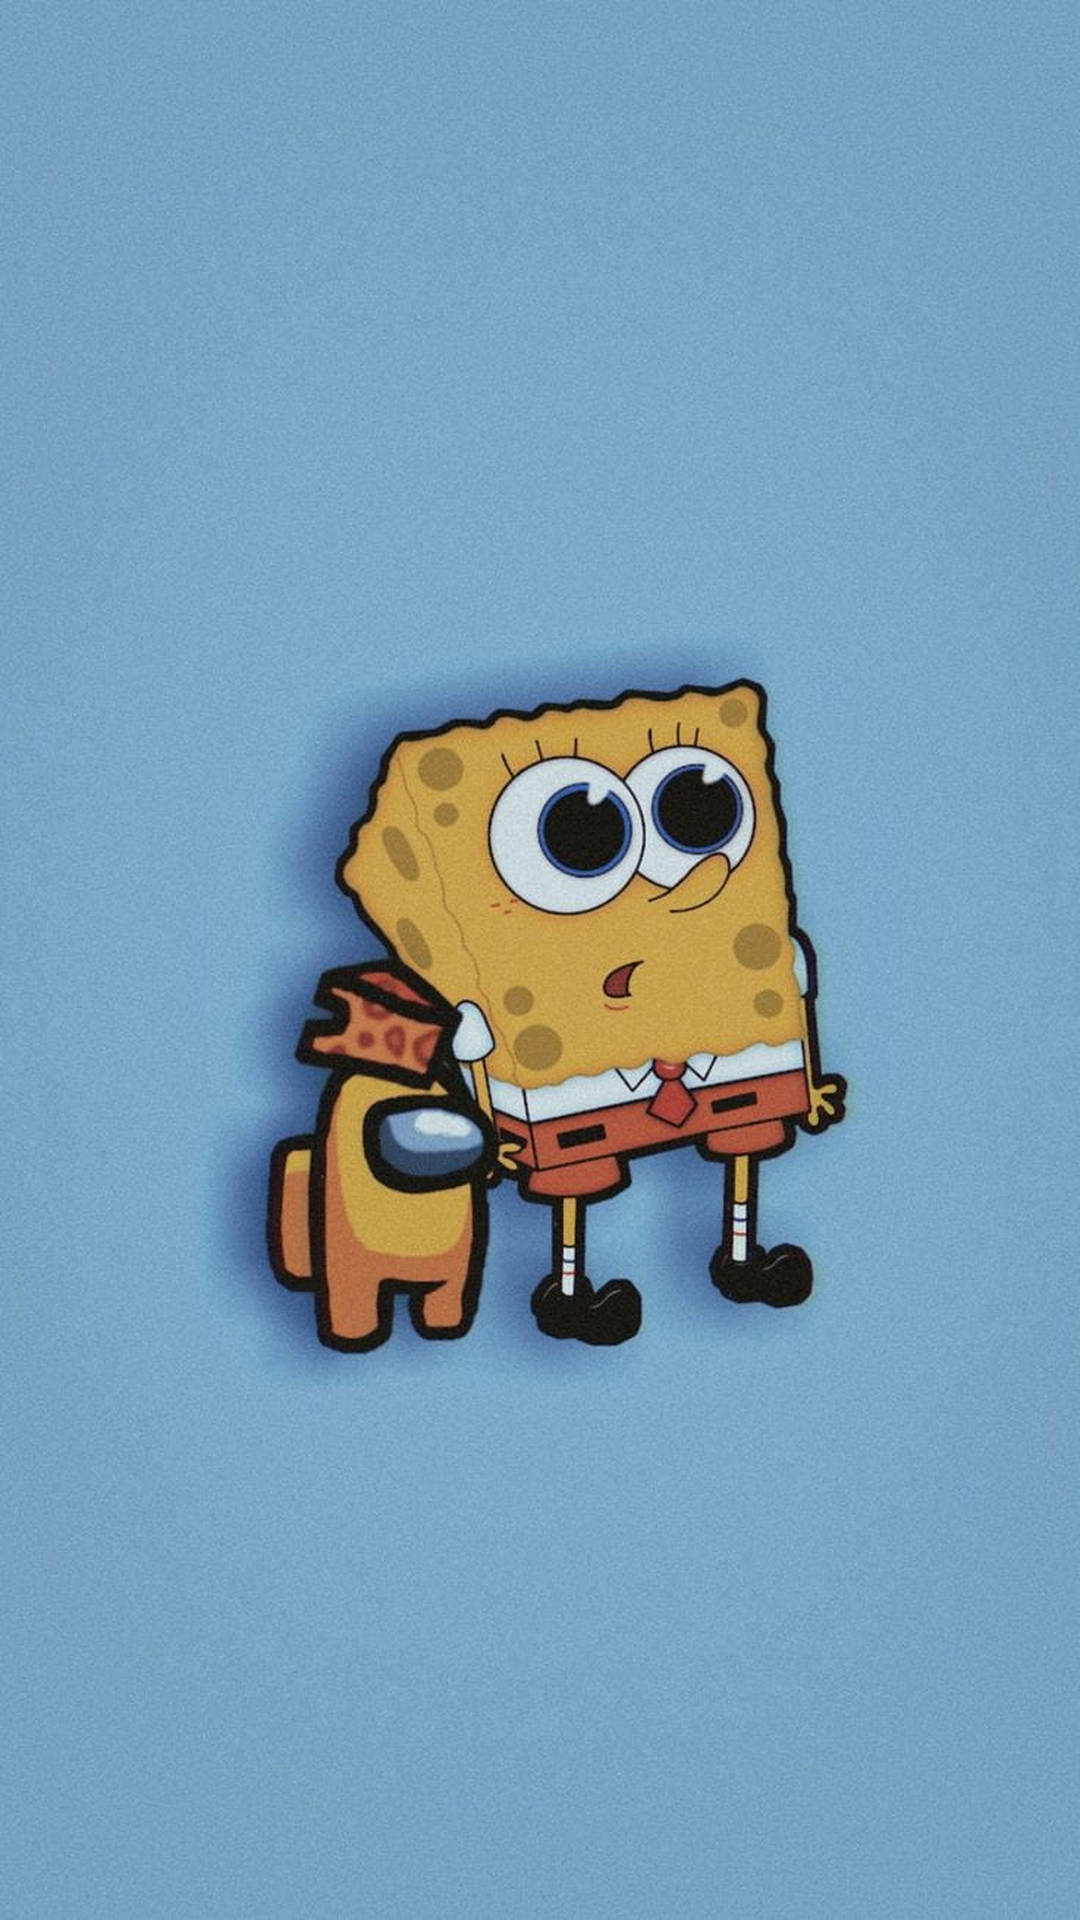 Aesthetic Among Us With Spongebob